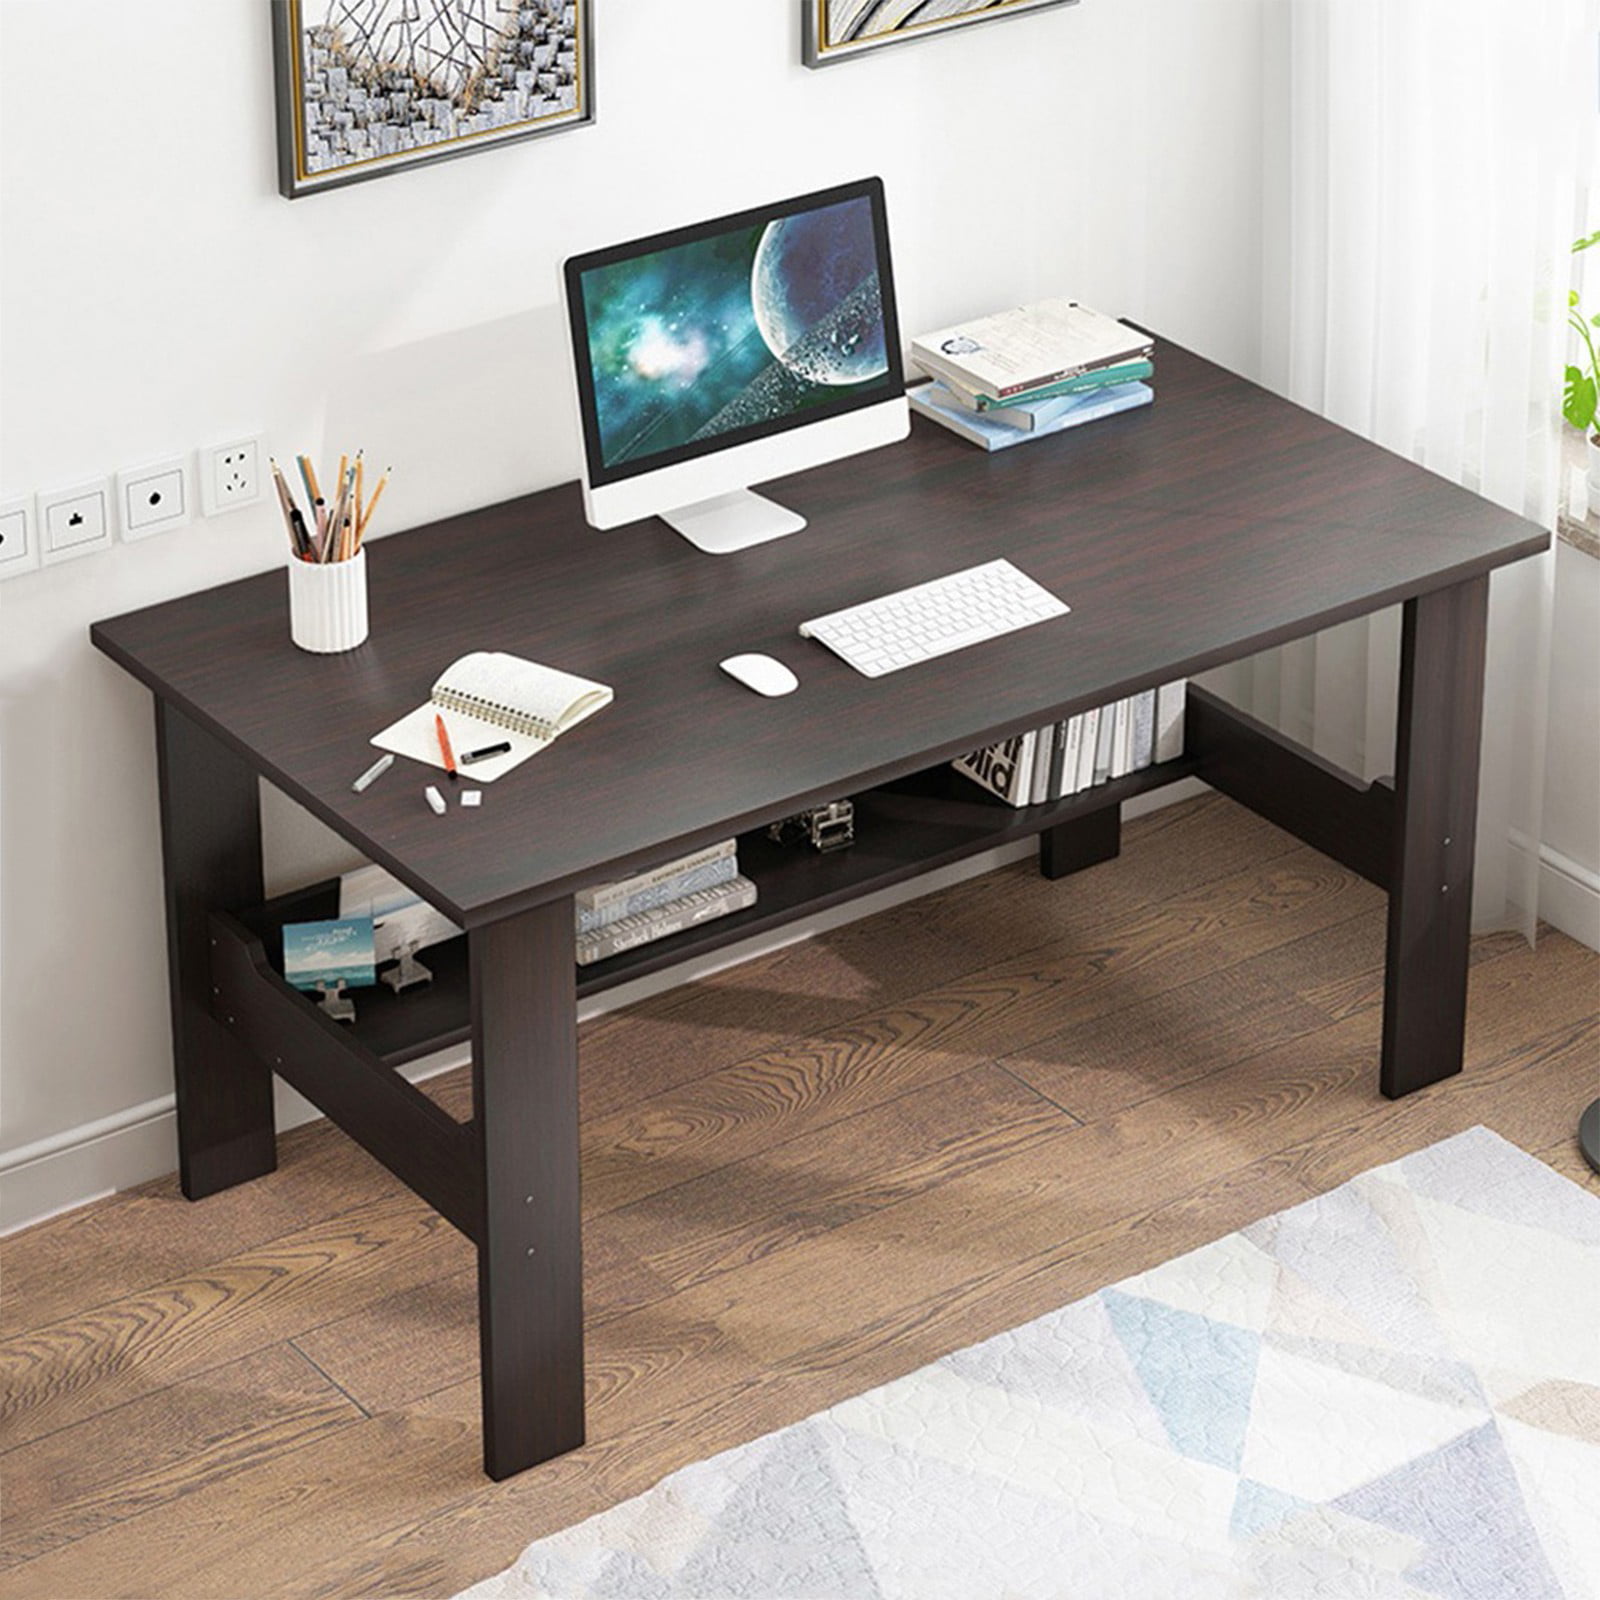 Details about   Bedroom Laptop Study Table Office Desk Workstation Home Desktop Computer Desk 